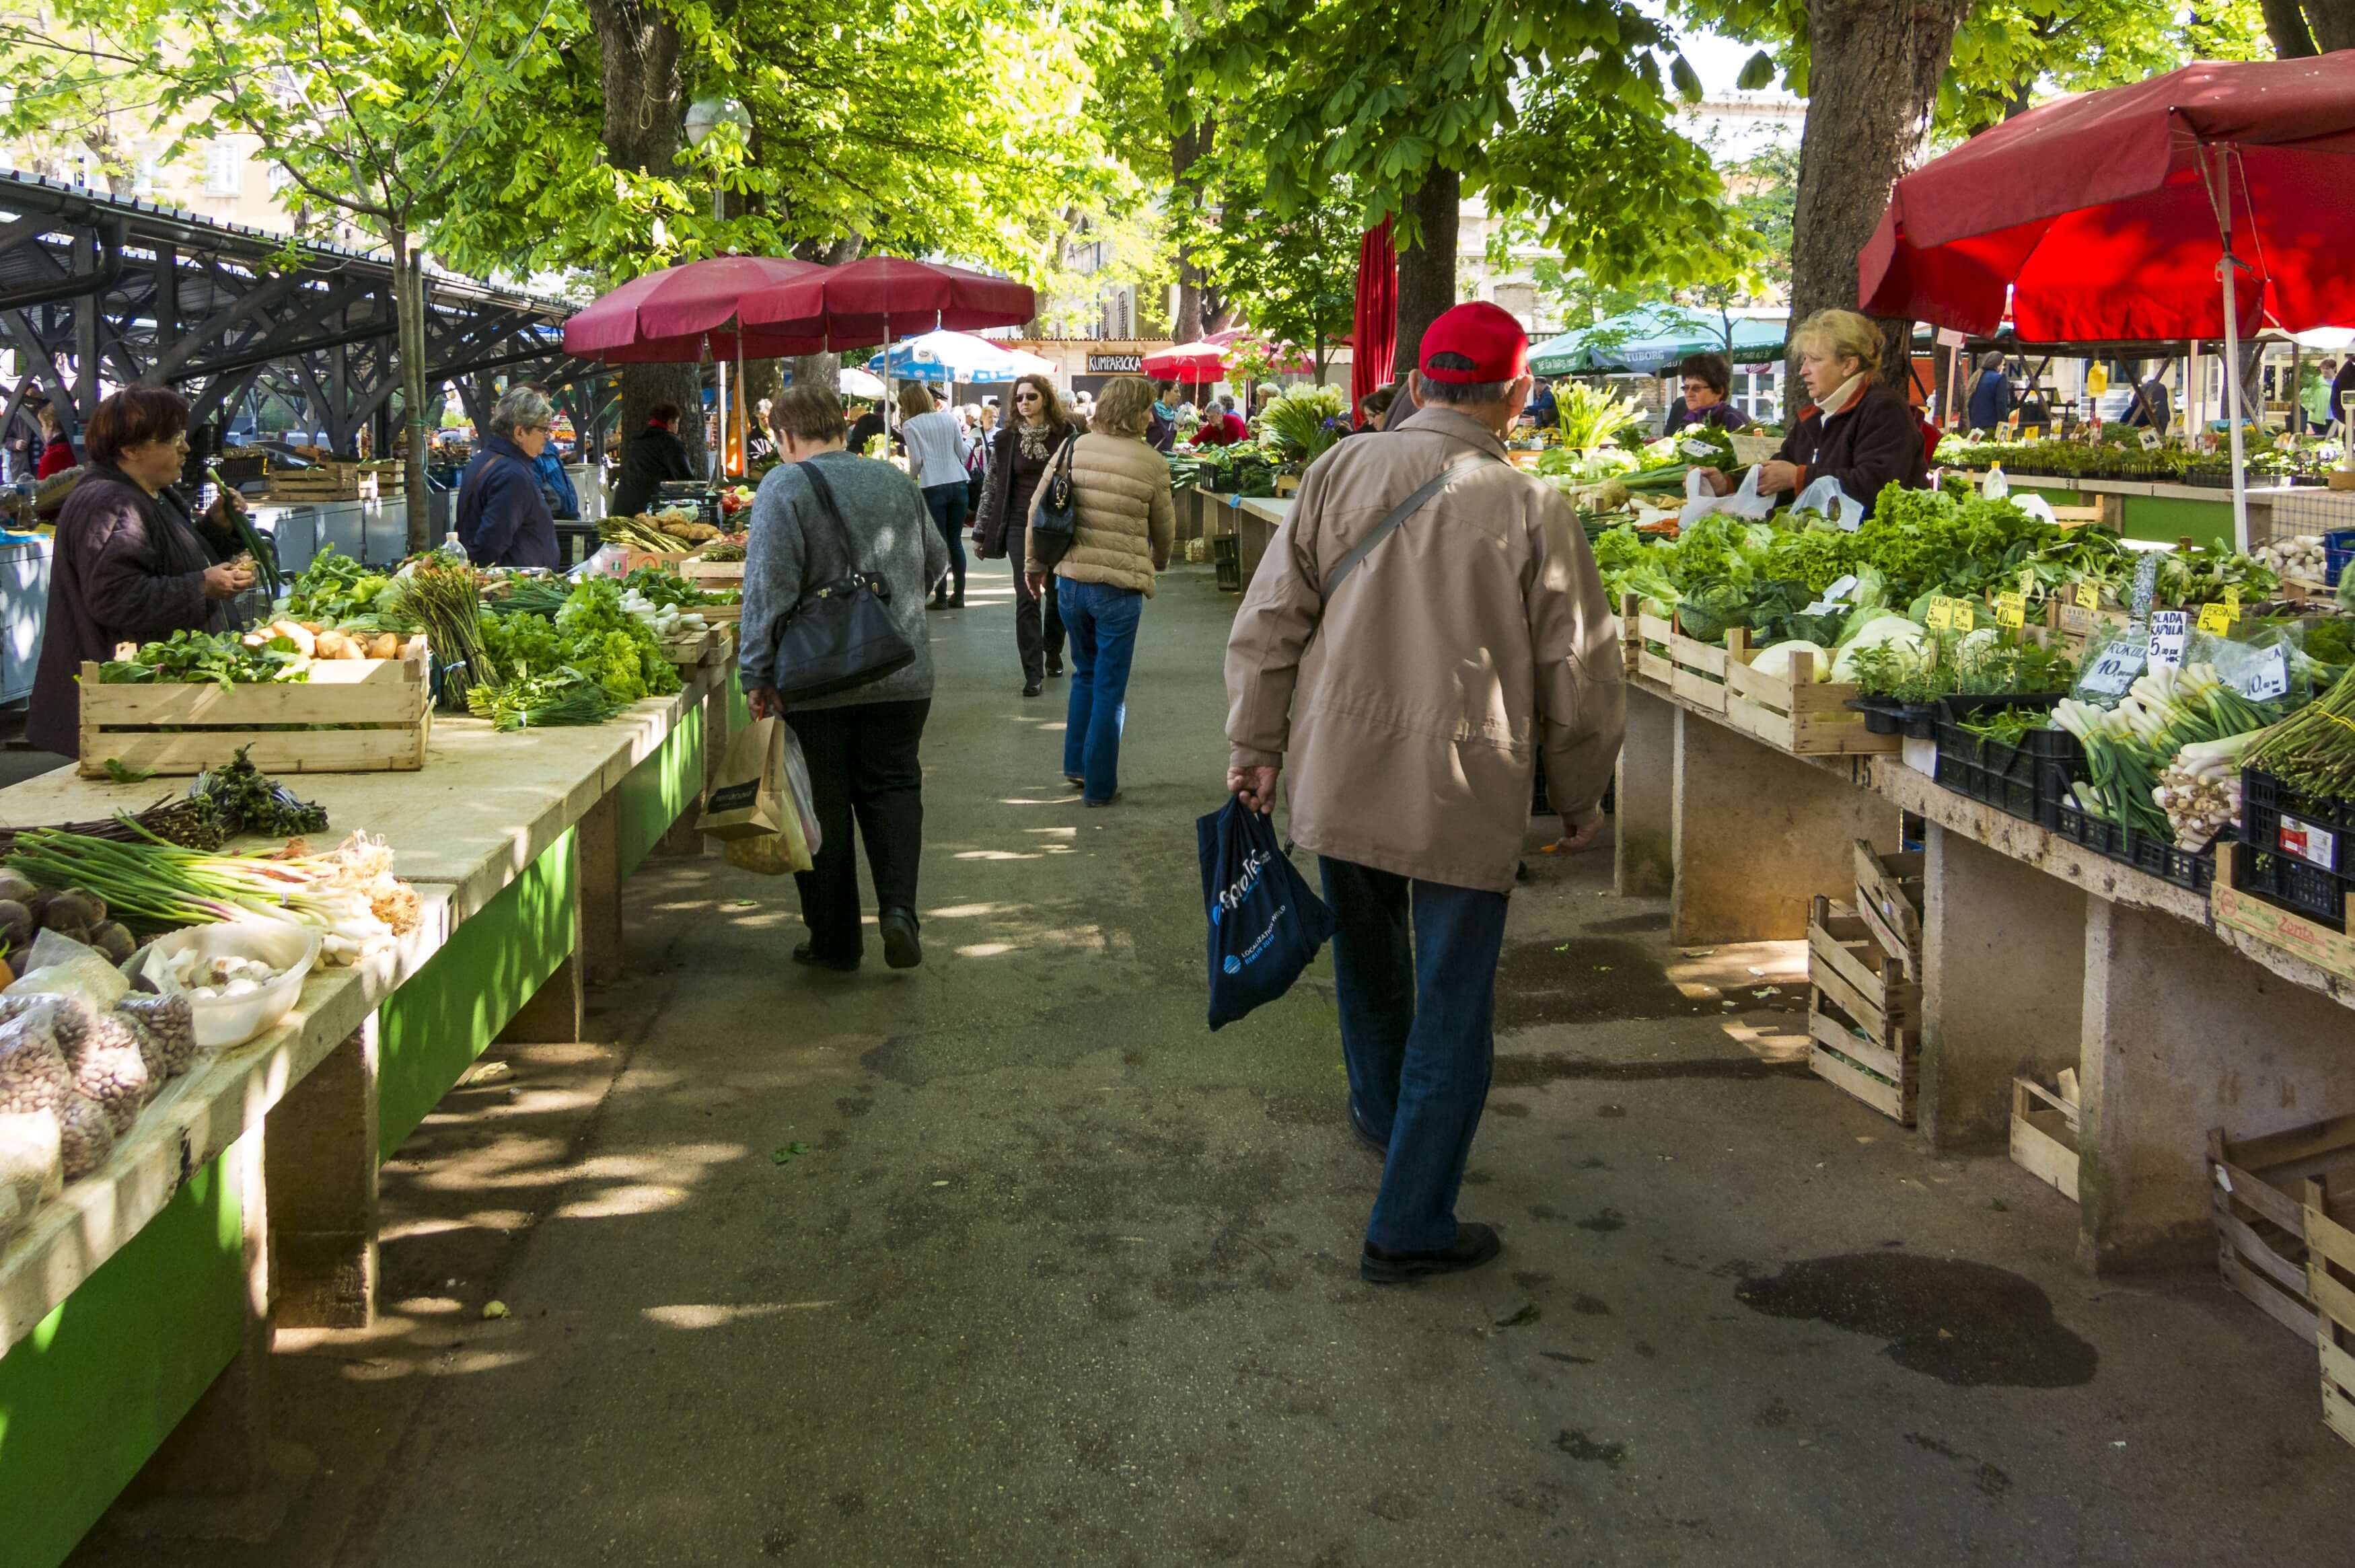 Personen auf einem Gemüsemarkt im freien